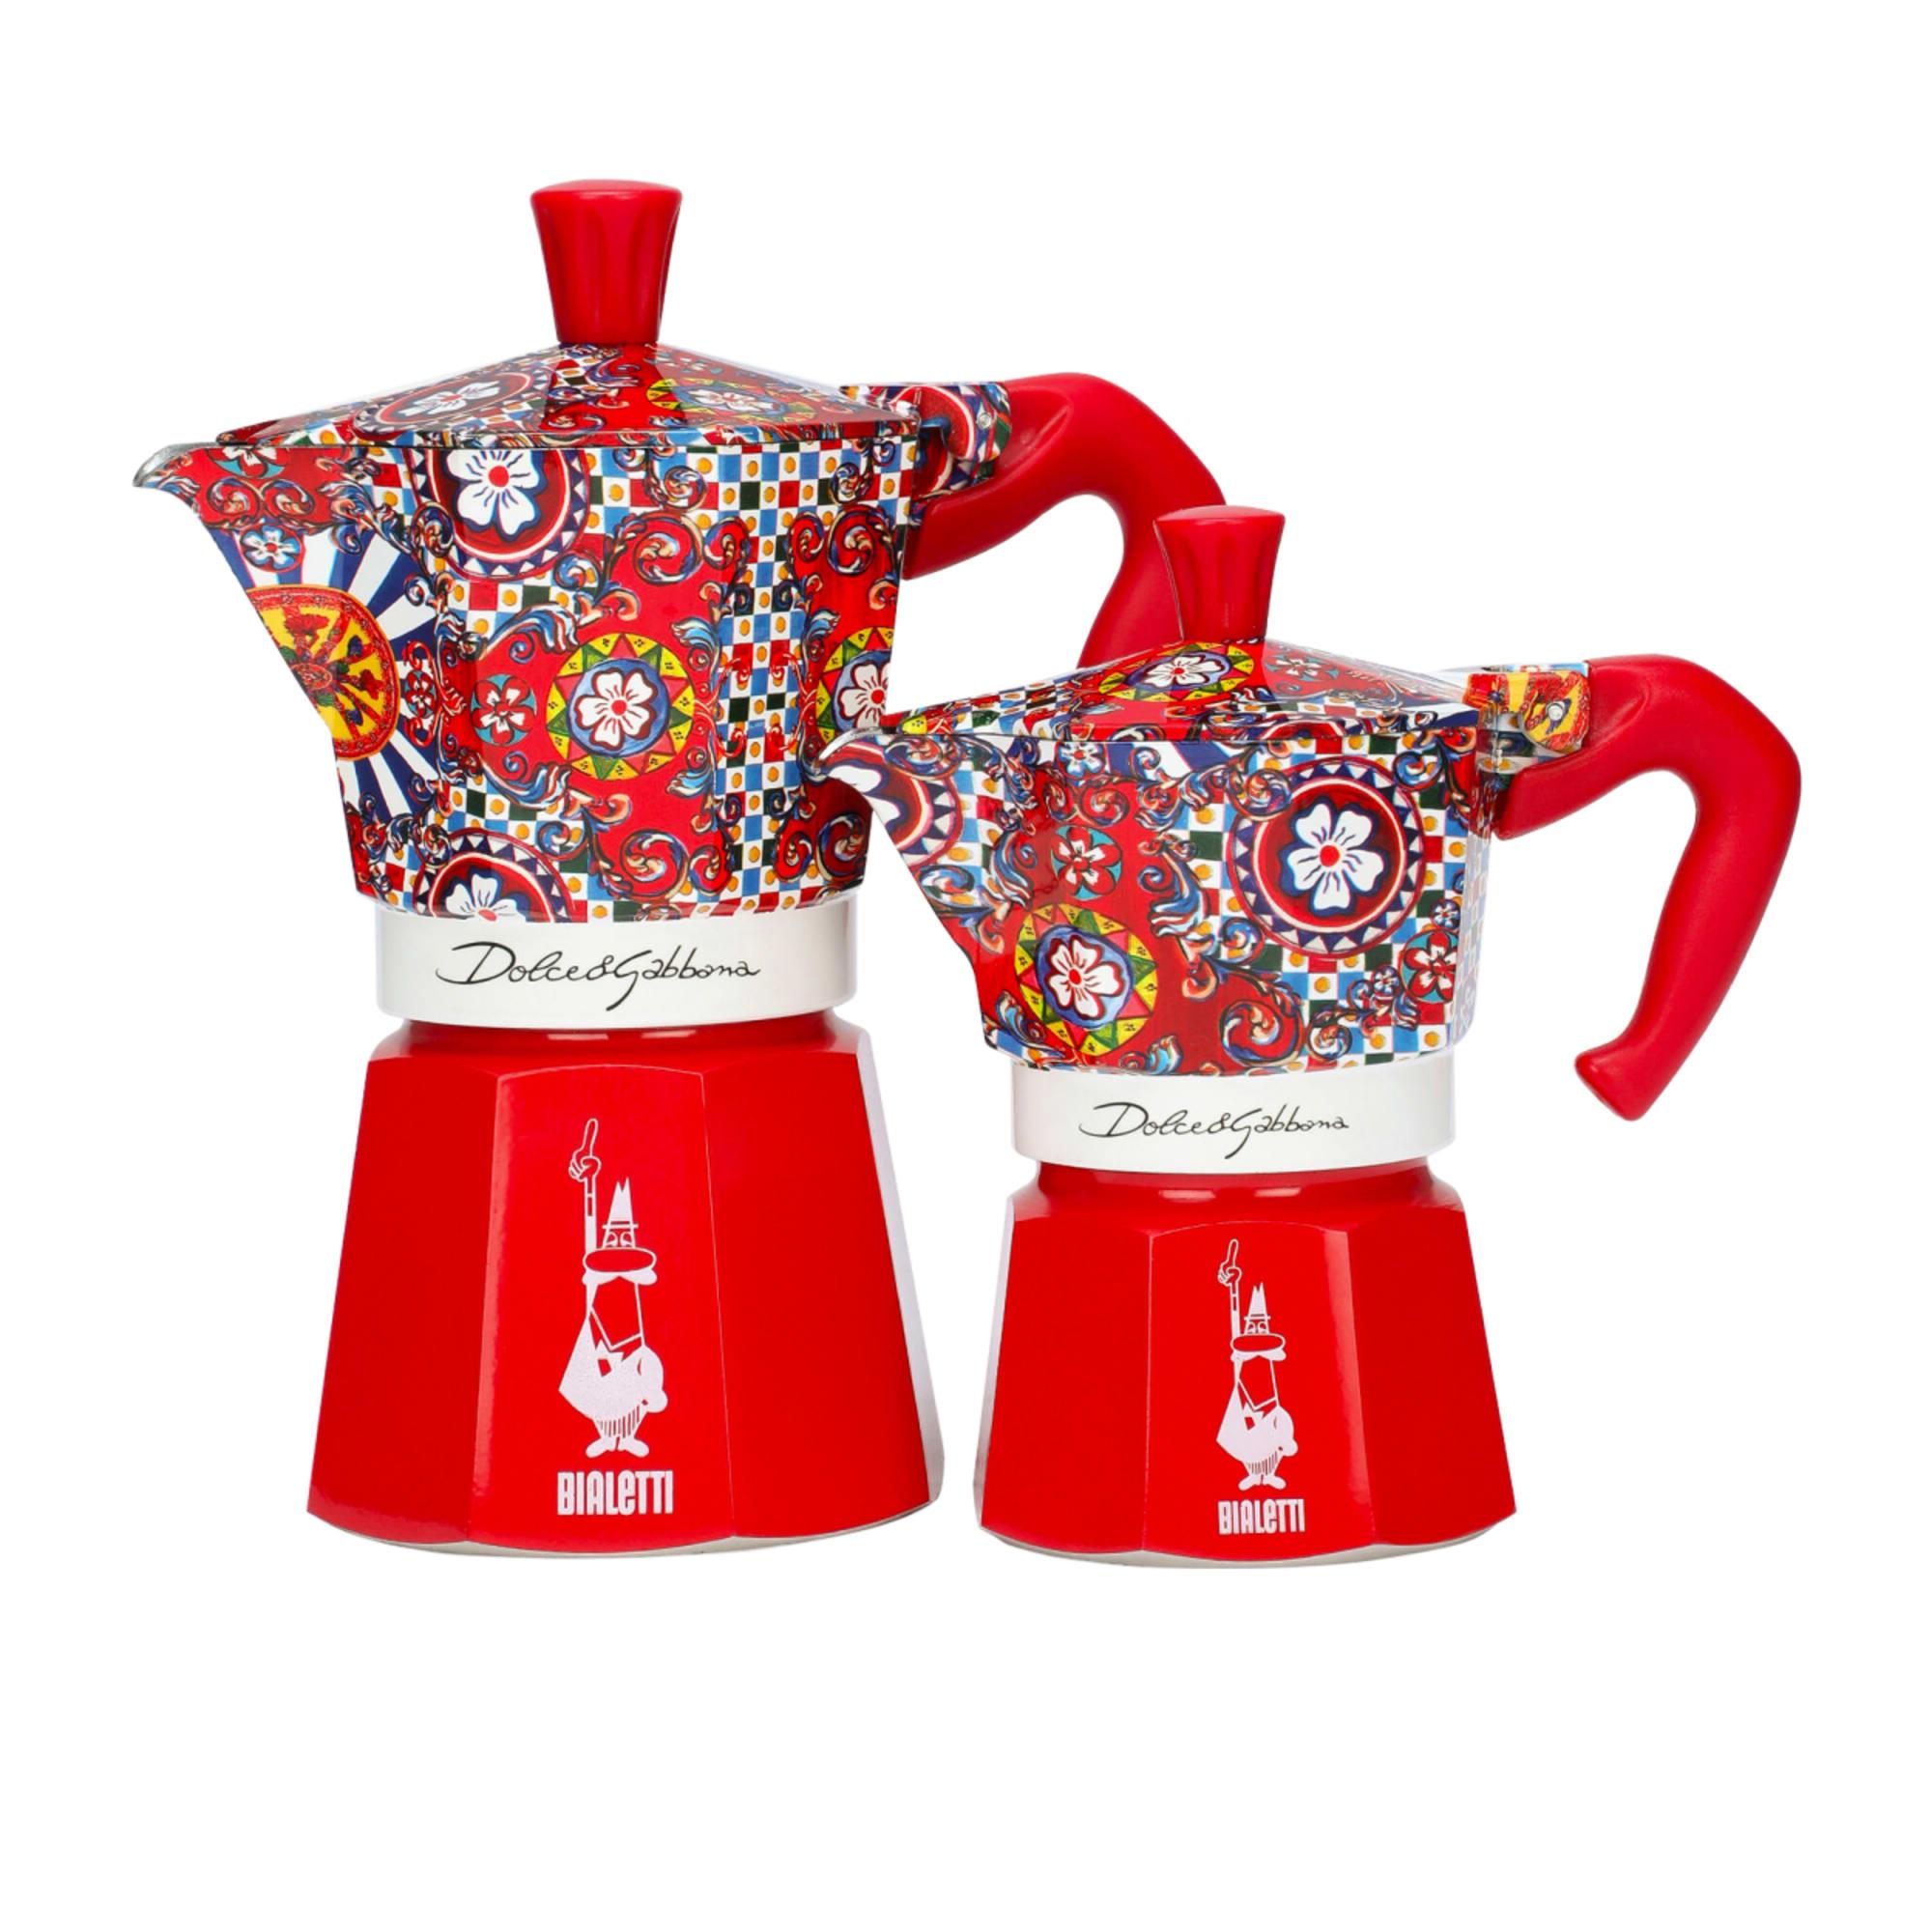 Bialetti Dolce & Gabbana Moka Express 3 cup Image 6